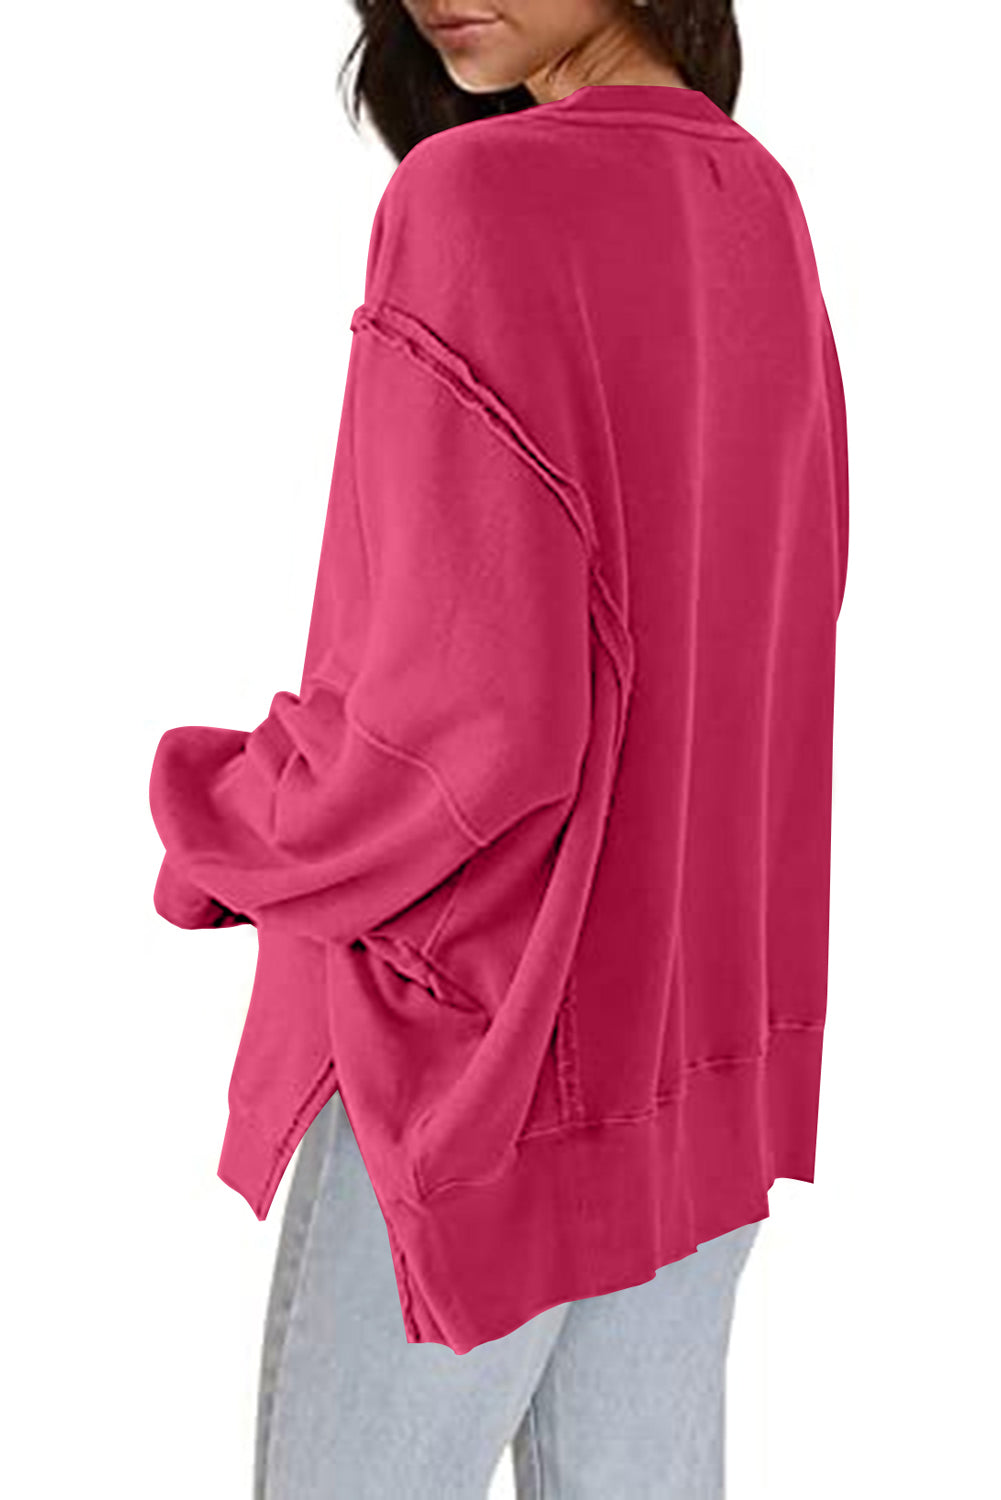 Sweatshirt in Rose mit freiliegender Naht, überschnittener Schulter, Schlitz und hohem, niedrigem Saum